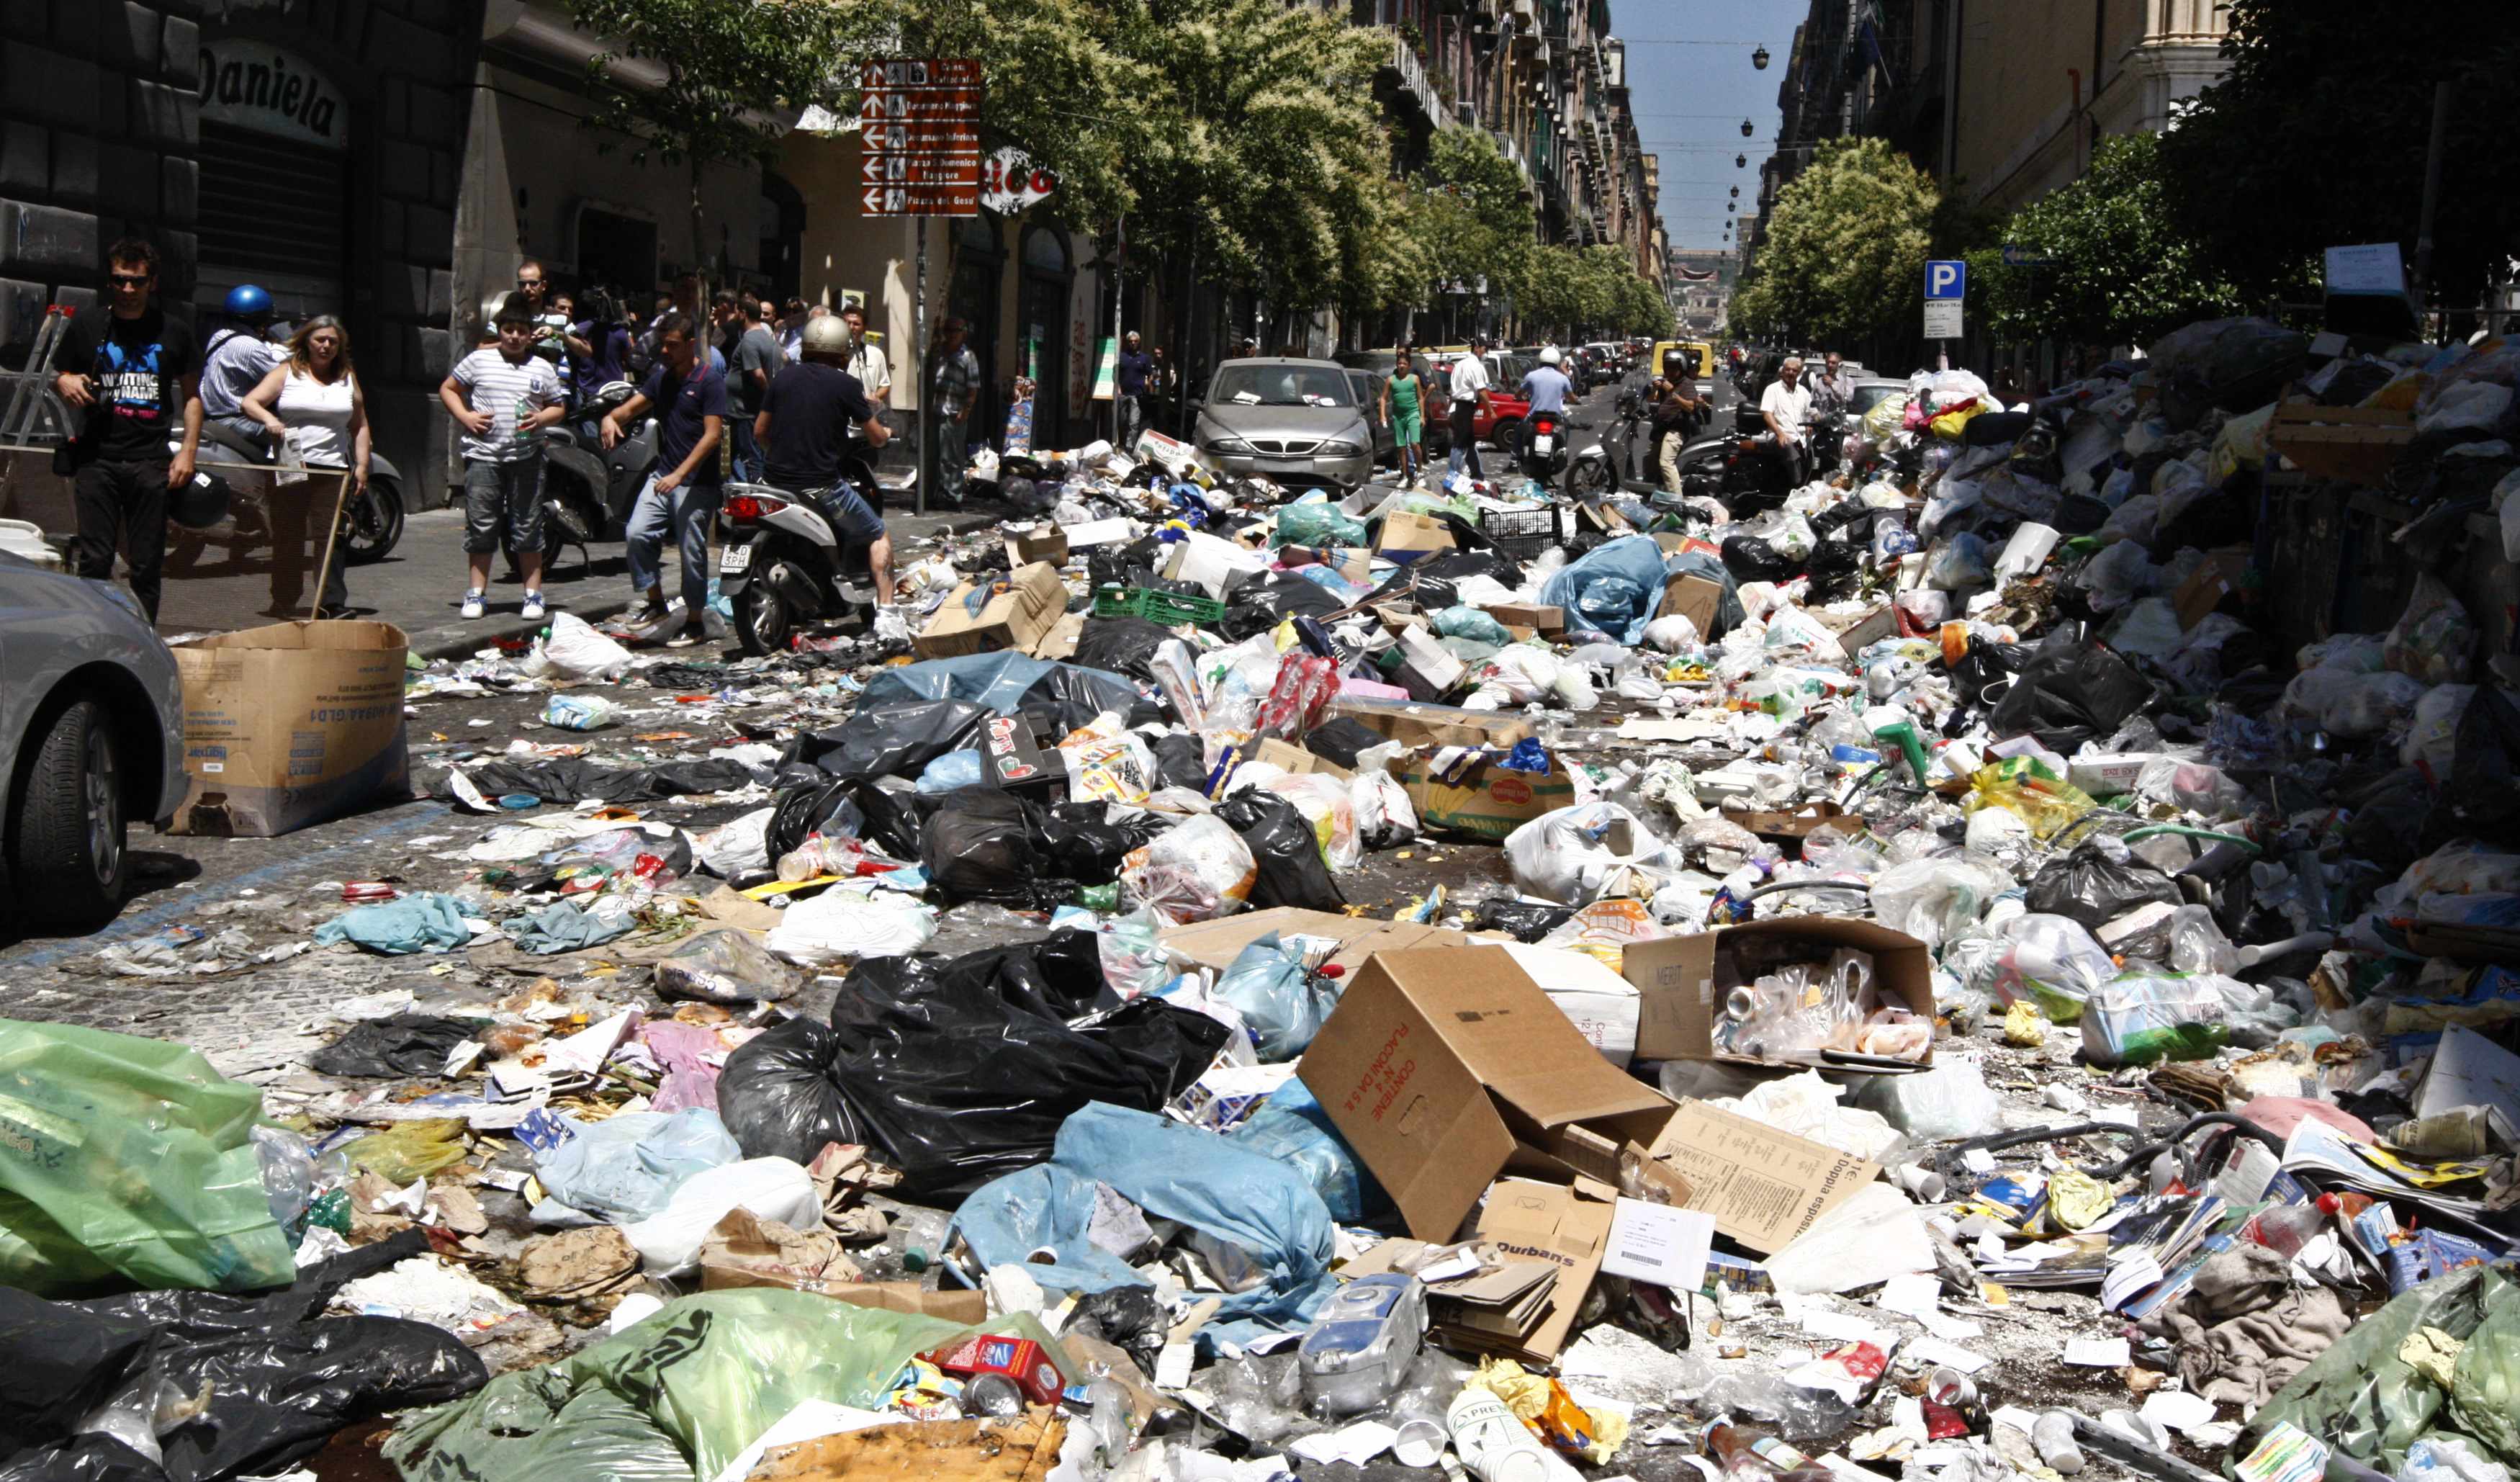 Σε έκτακτη κατάσταση η Νάπολη λόγω σκουπιδιών